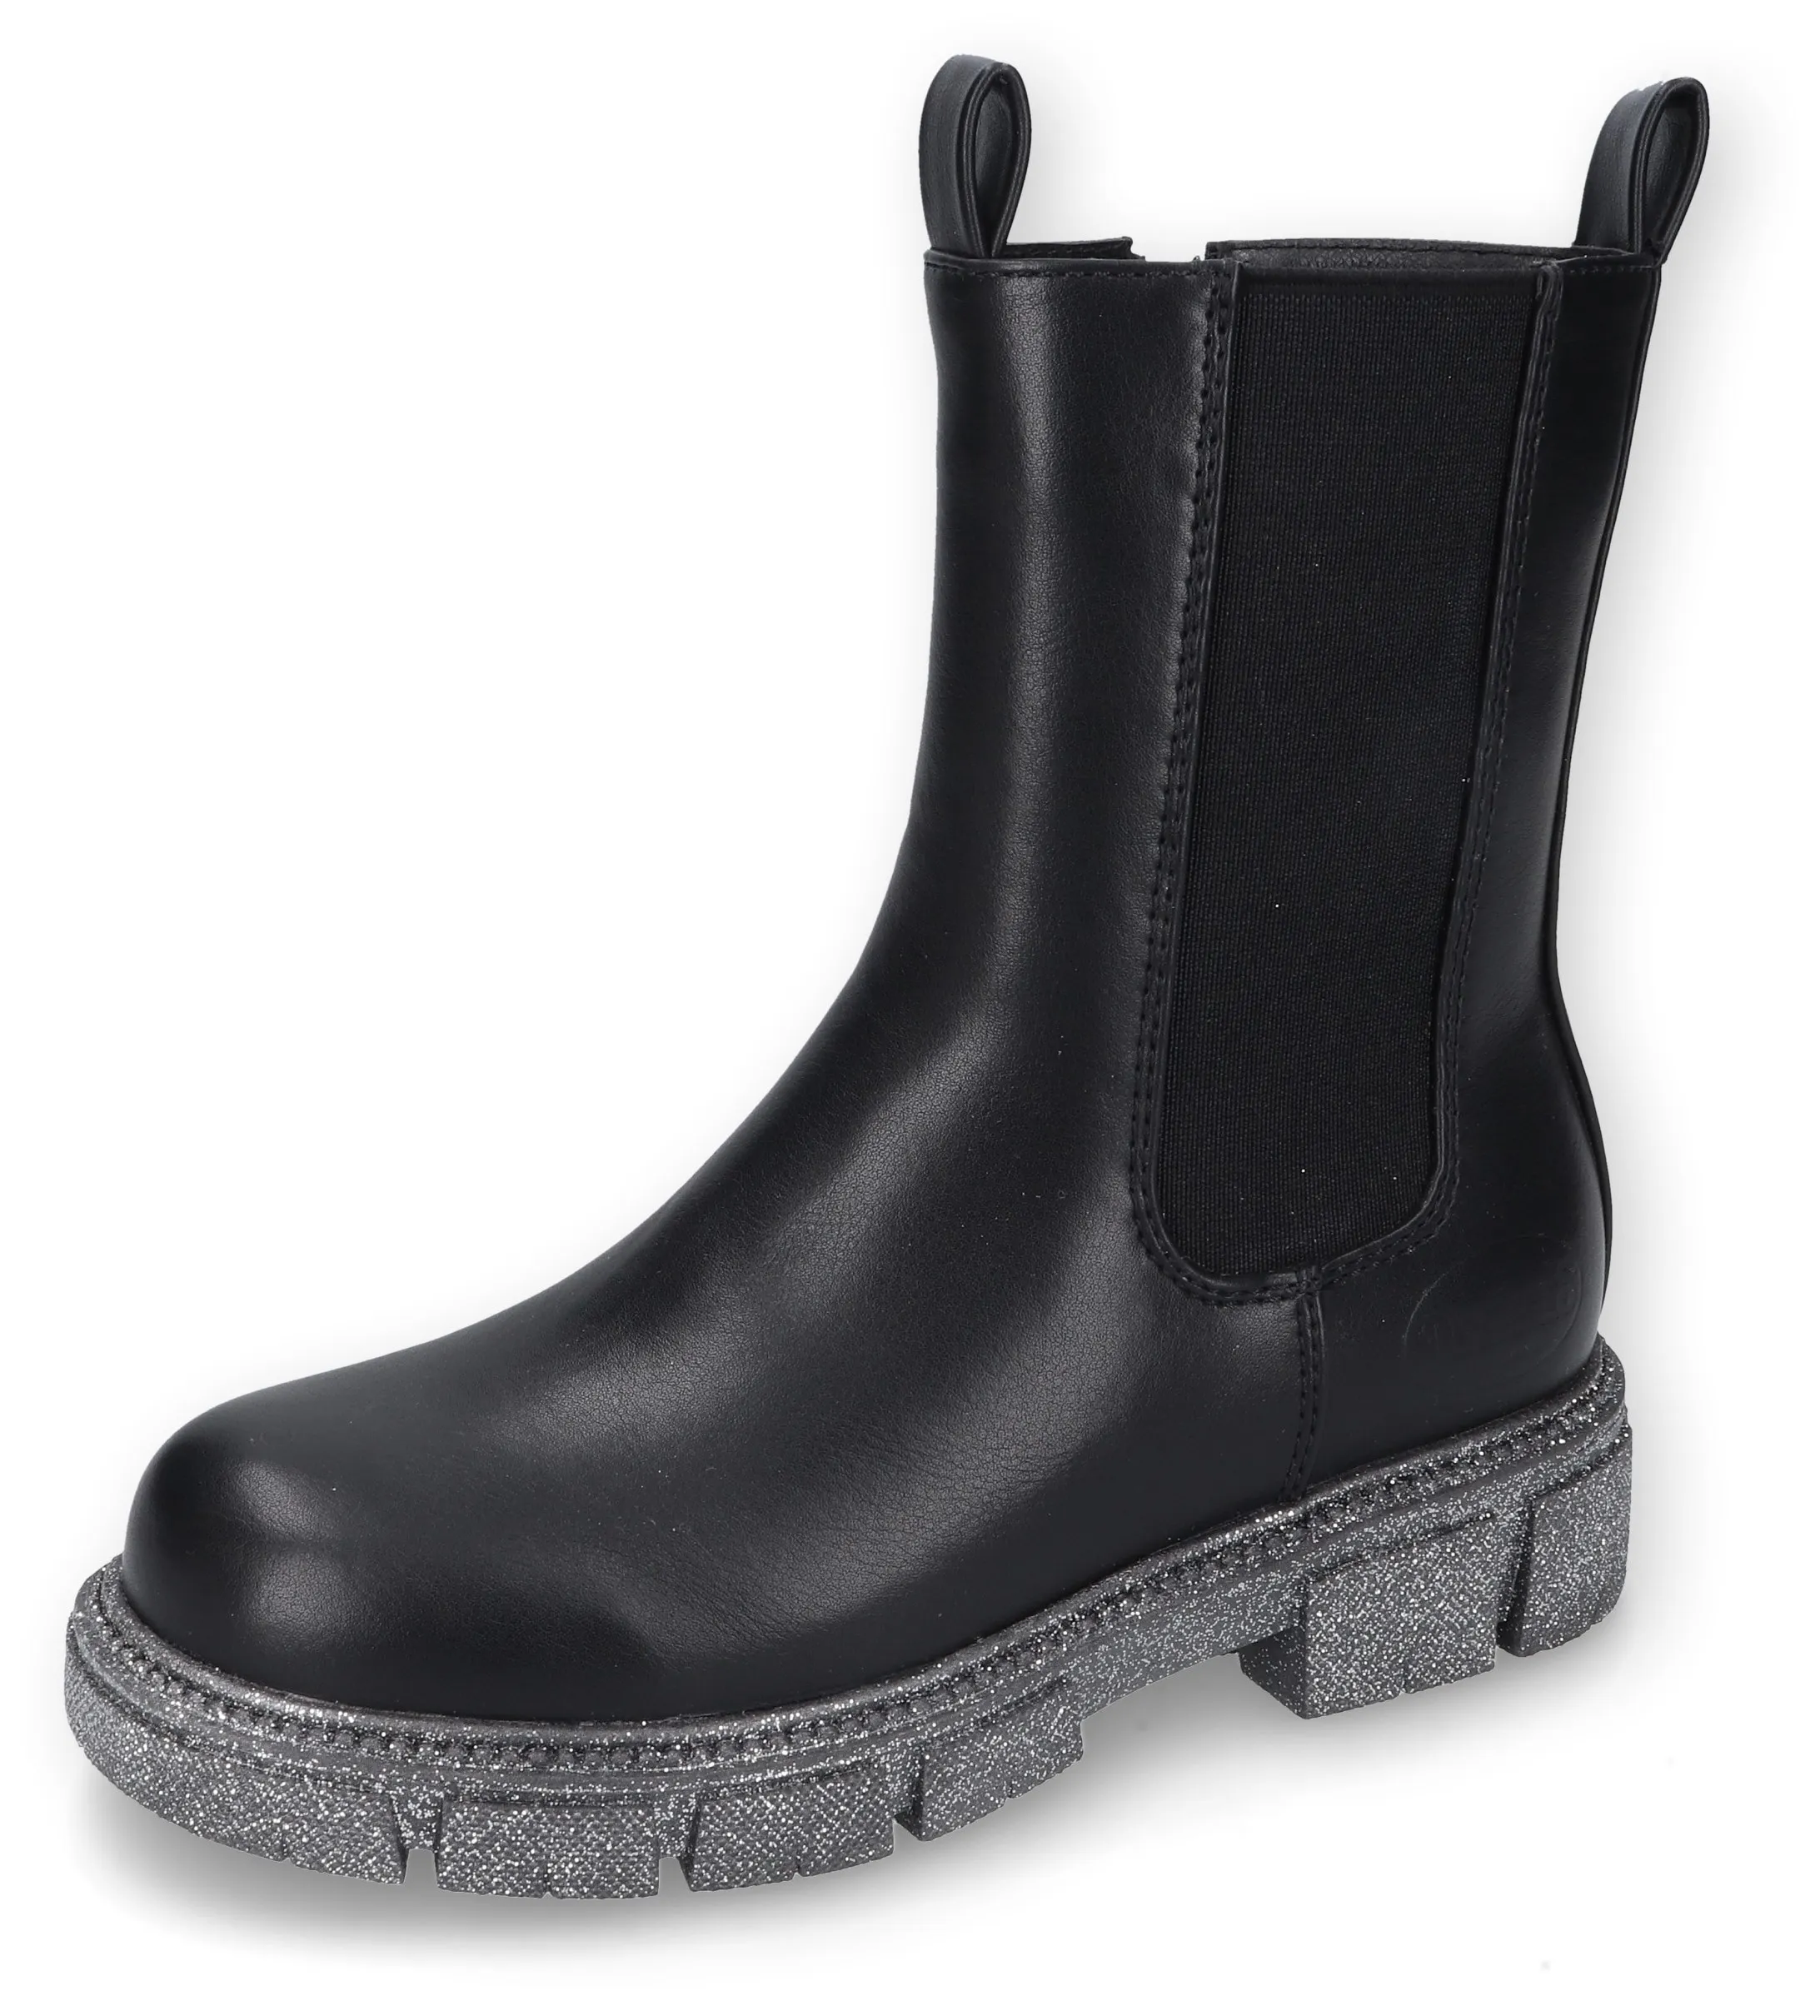 Stiefel DOCKERS BY GERLI Gr. 31, schwarz Kinder Schuhe Stiefel Boots mit cooler Laufsohle